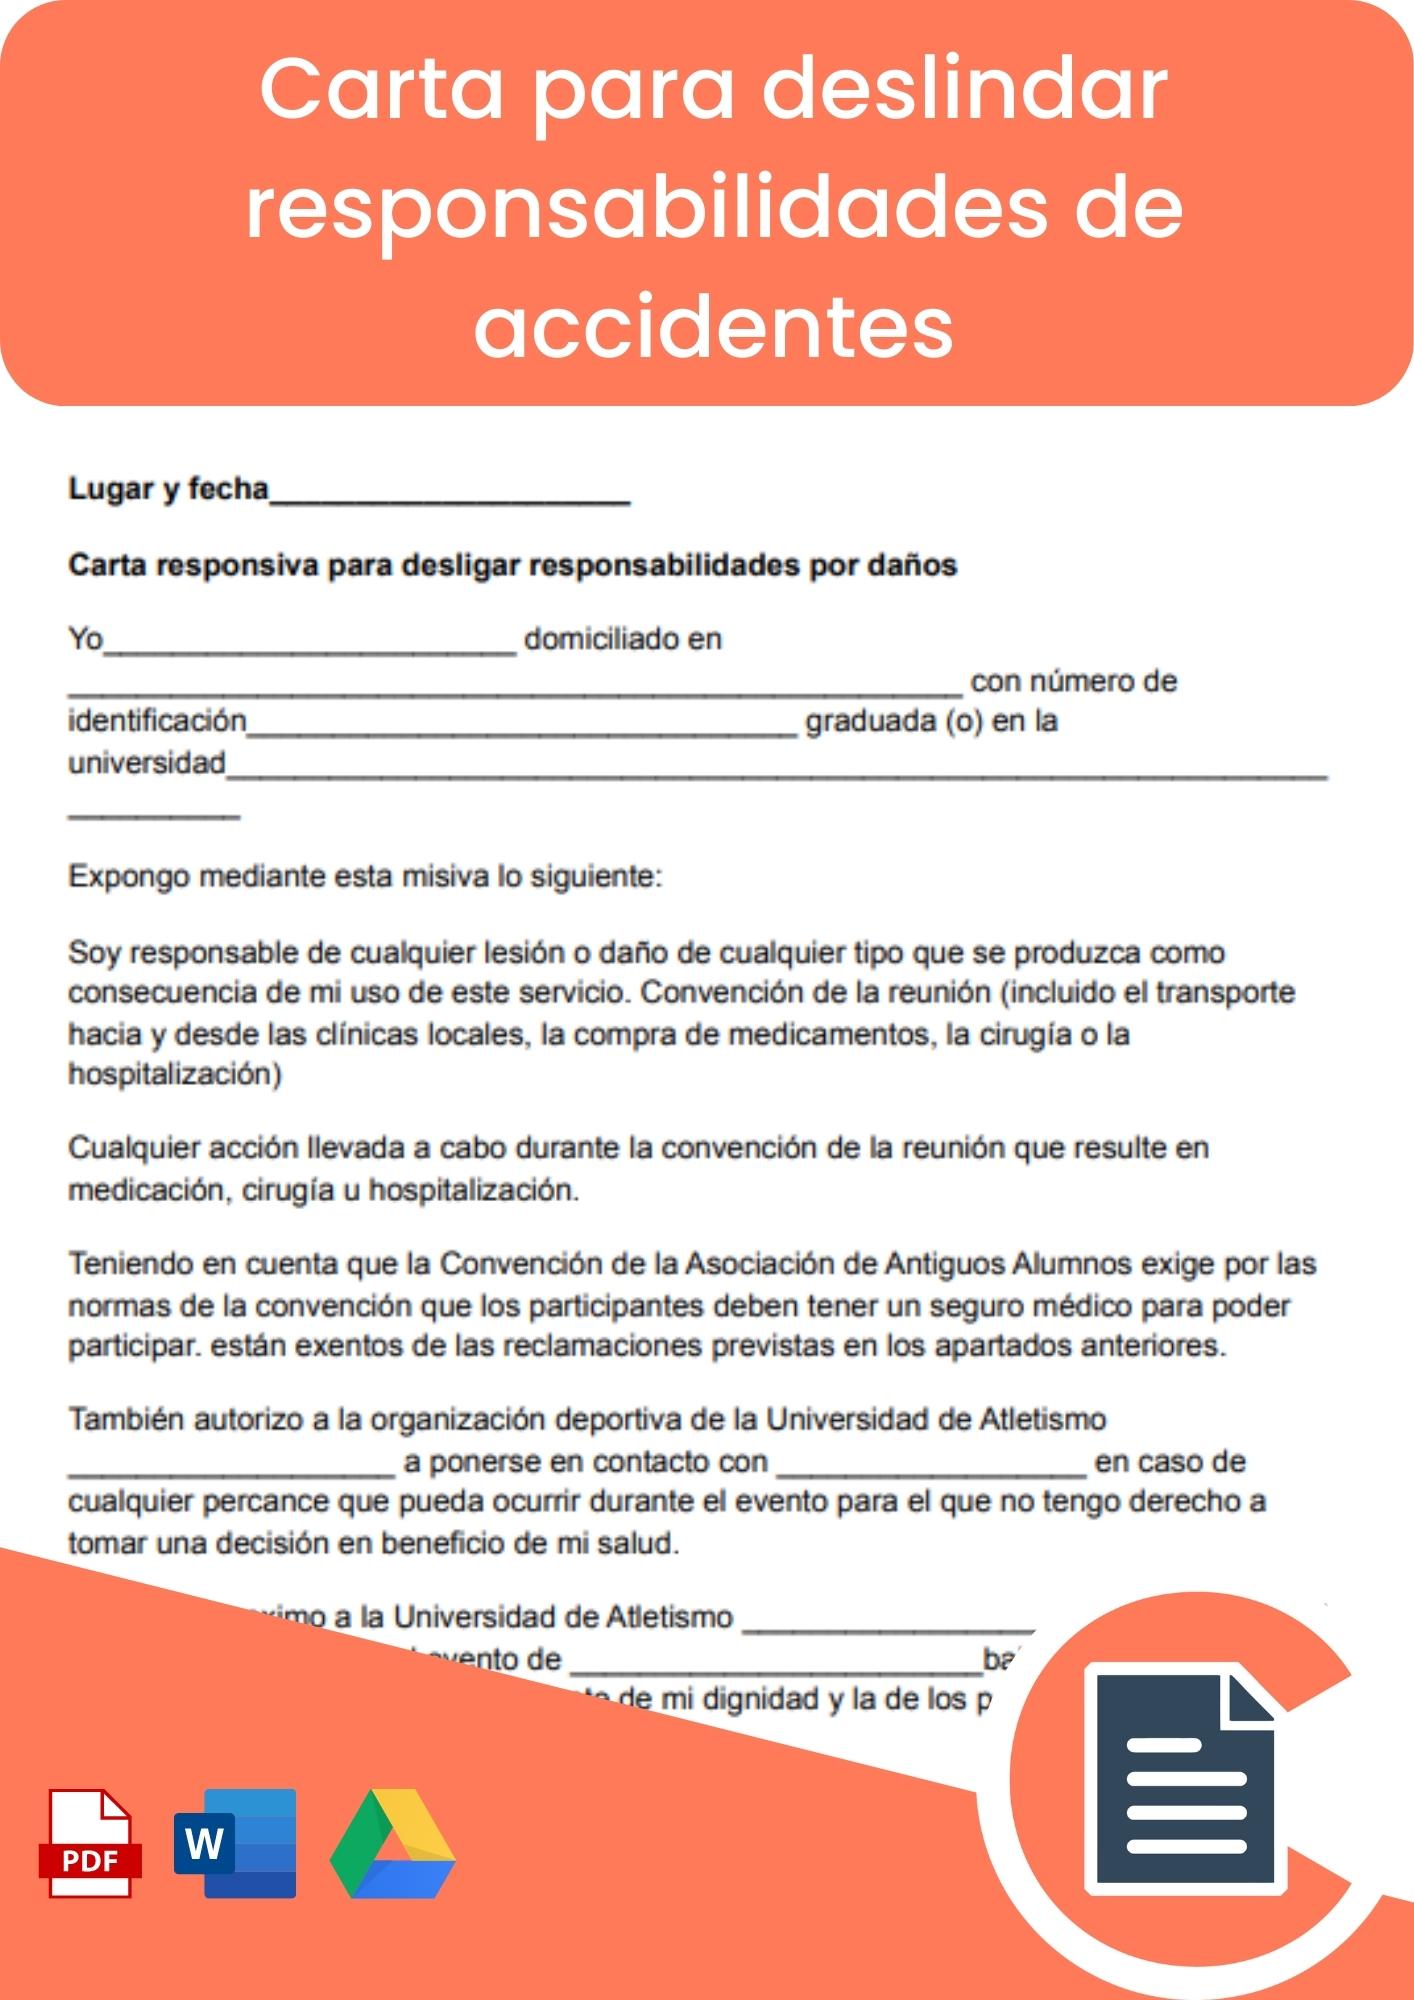 Carta responsiva para desligar responsabilidades de accidentes